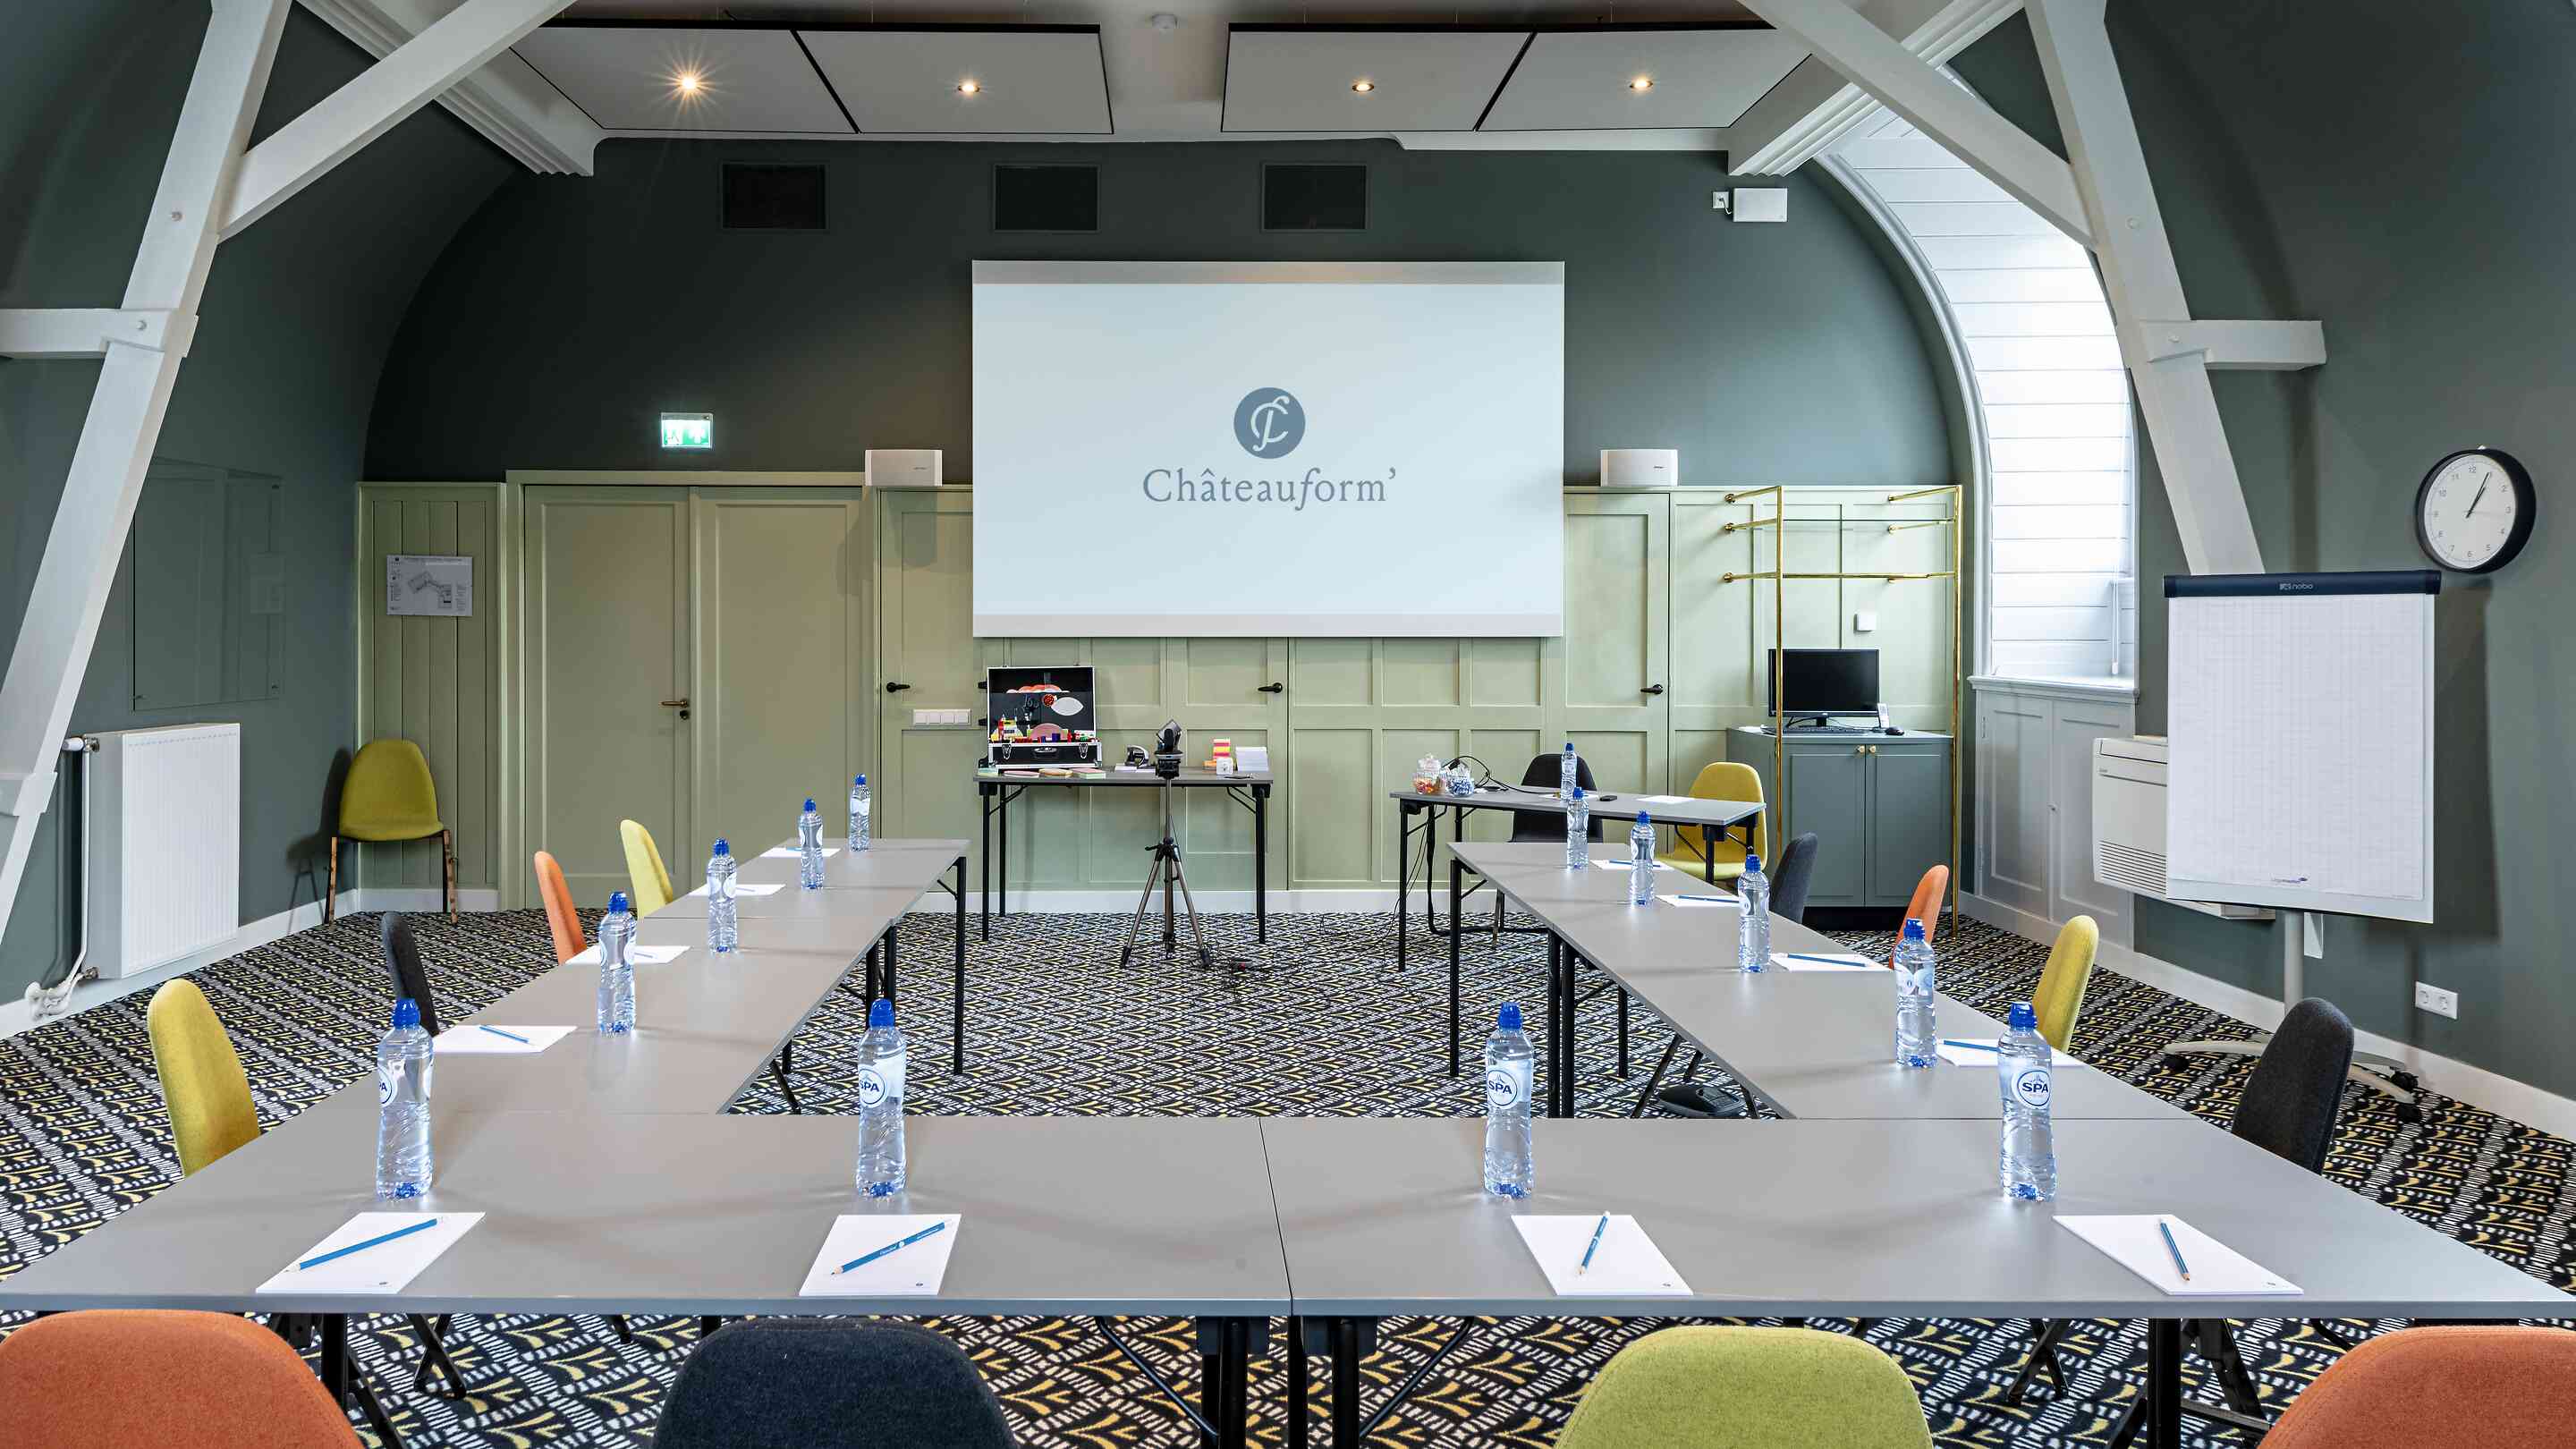 Location salle de réunion & formation Paris Nord avec Châteauform'